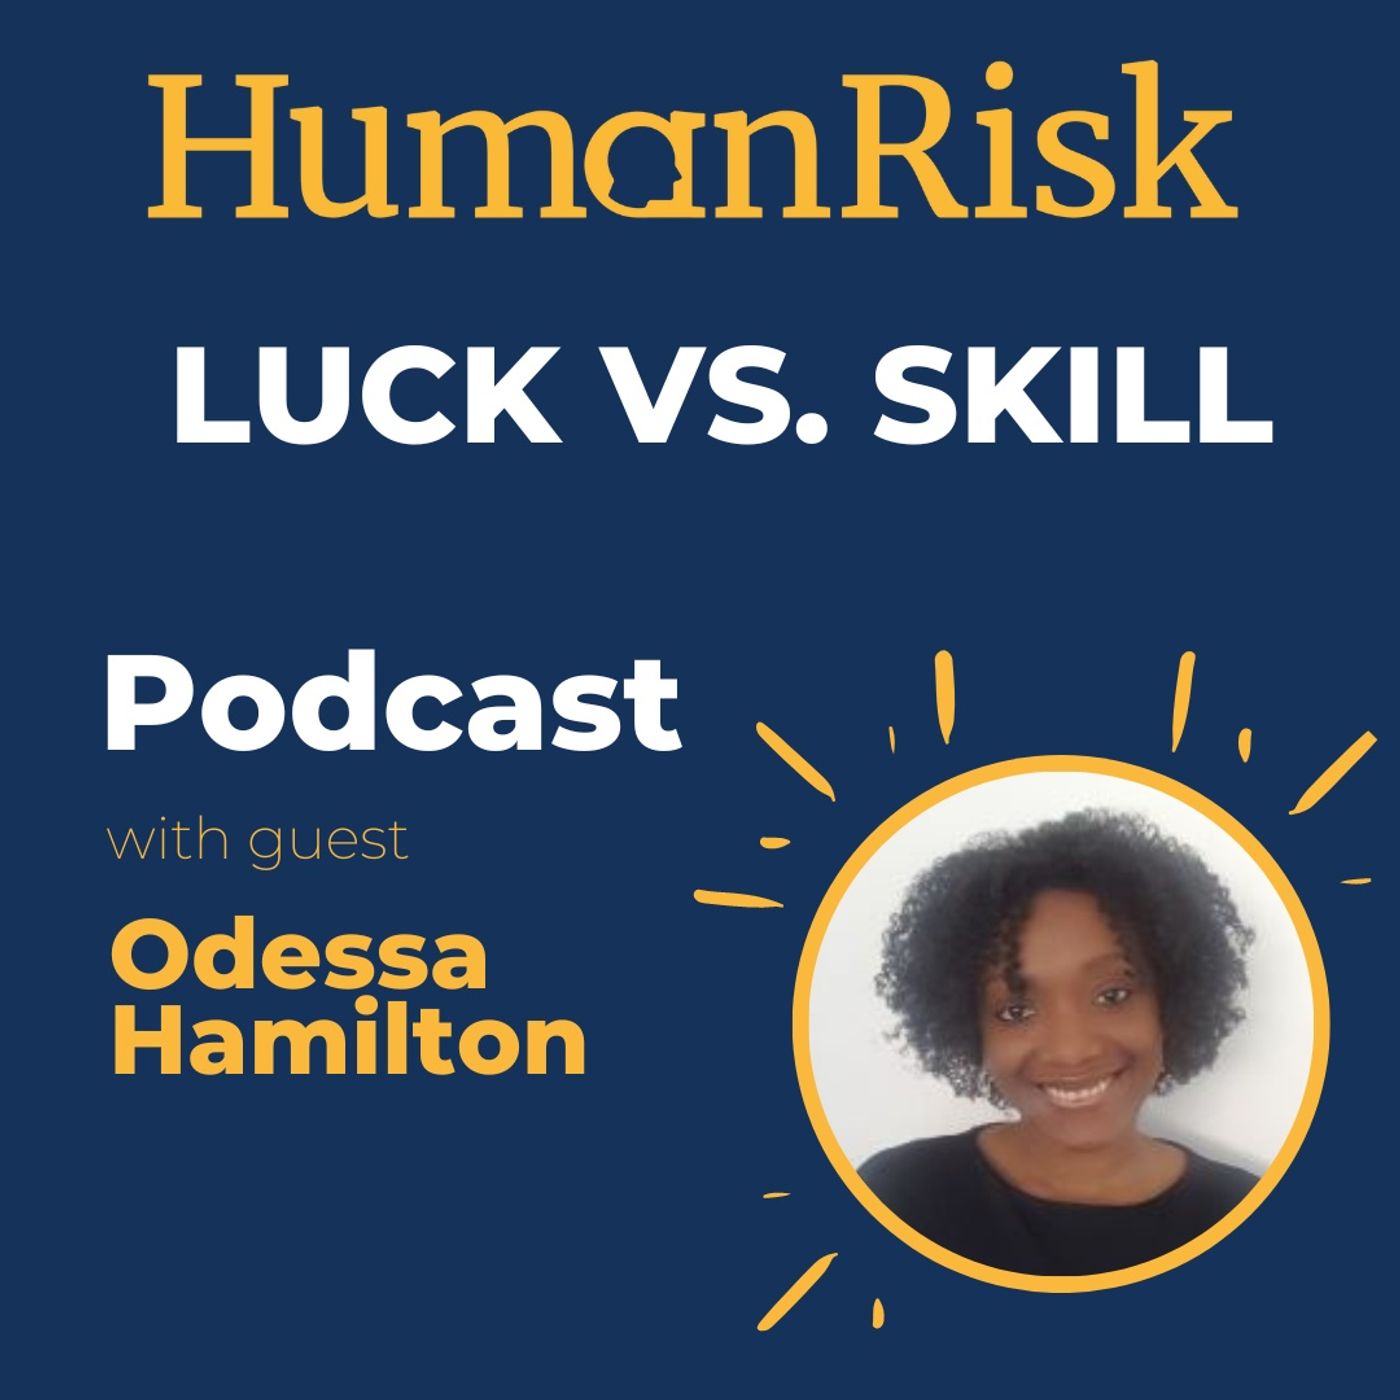 Odessa Hamilton on Luck vs Skill